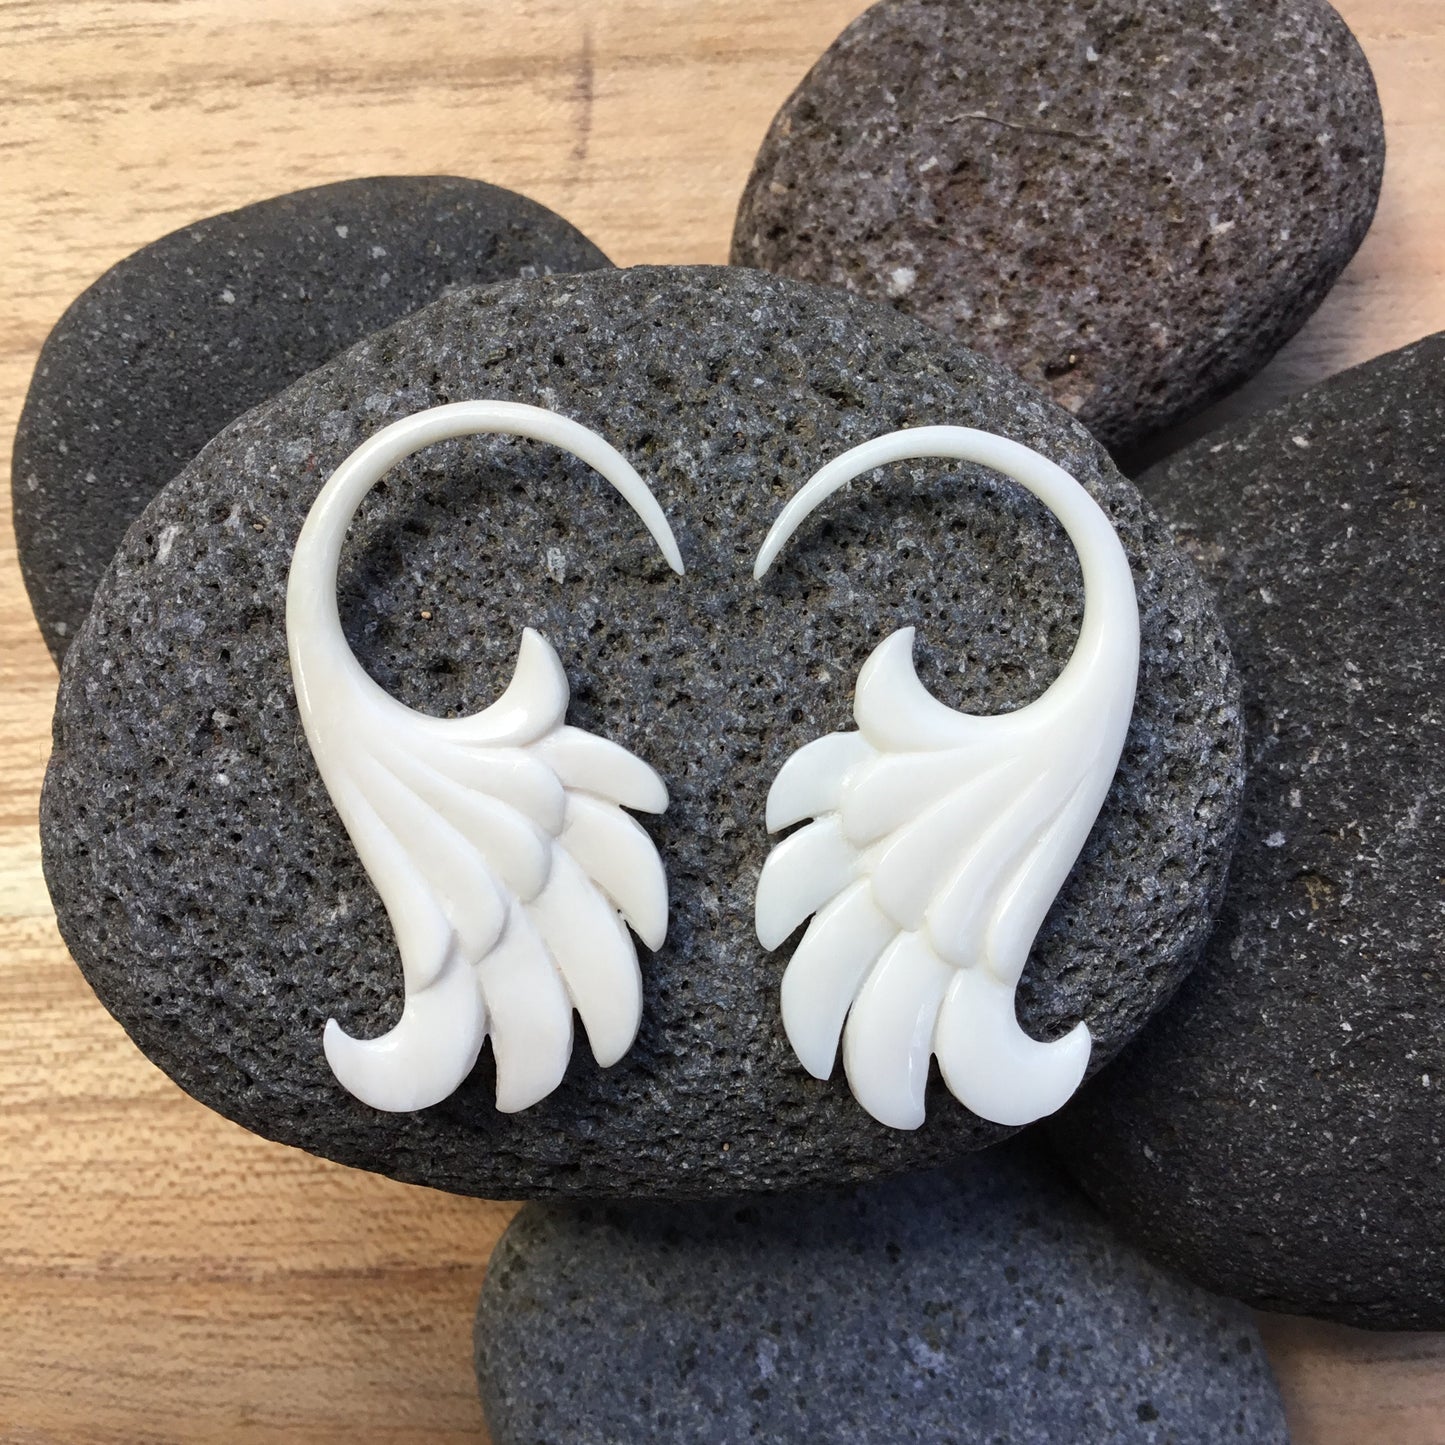 Wings. Bone 12g gauge earrings.